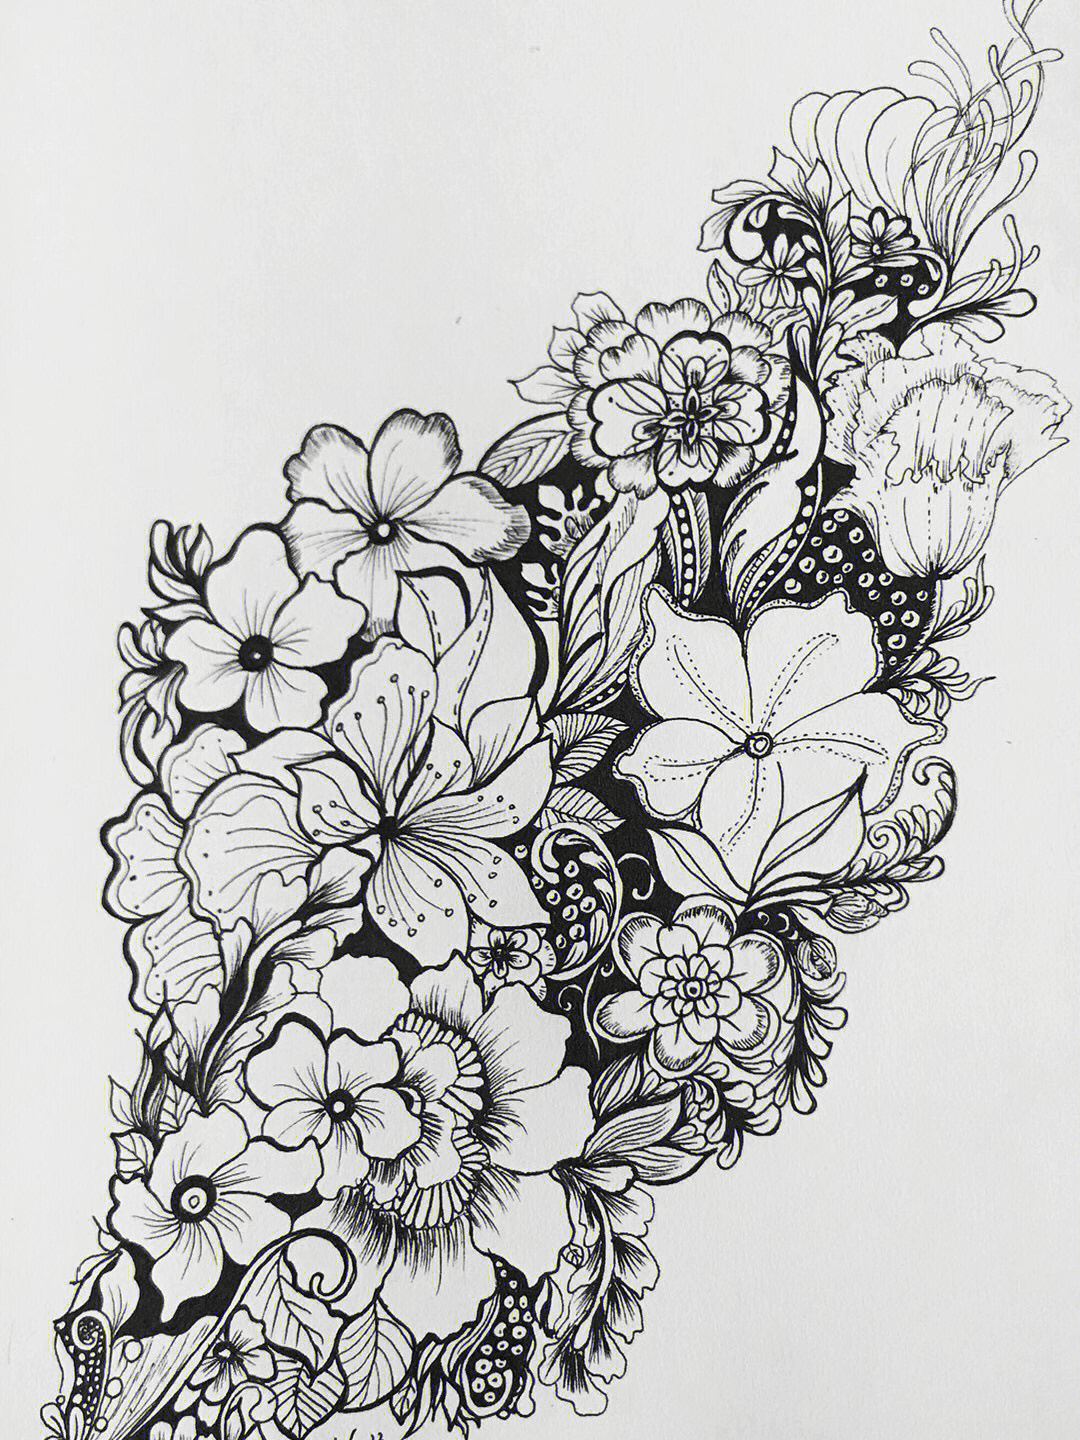 针管笔手绘花卉系列